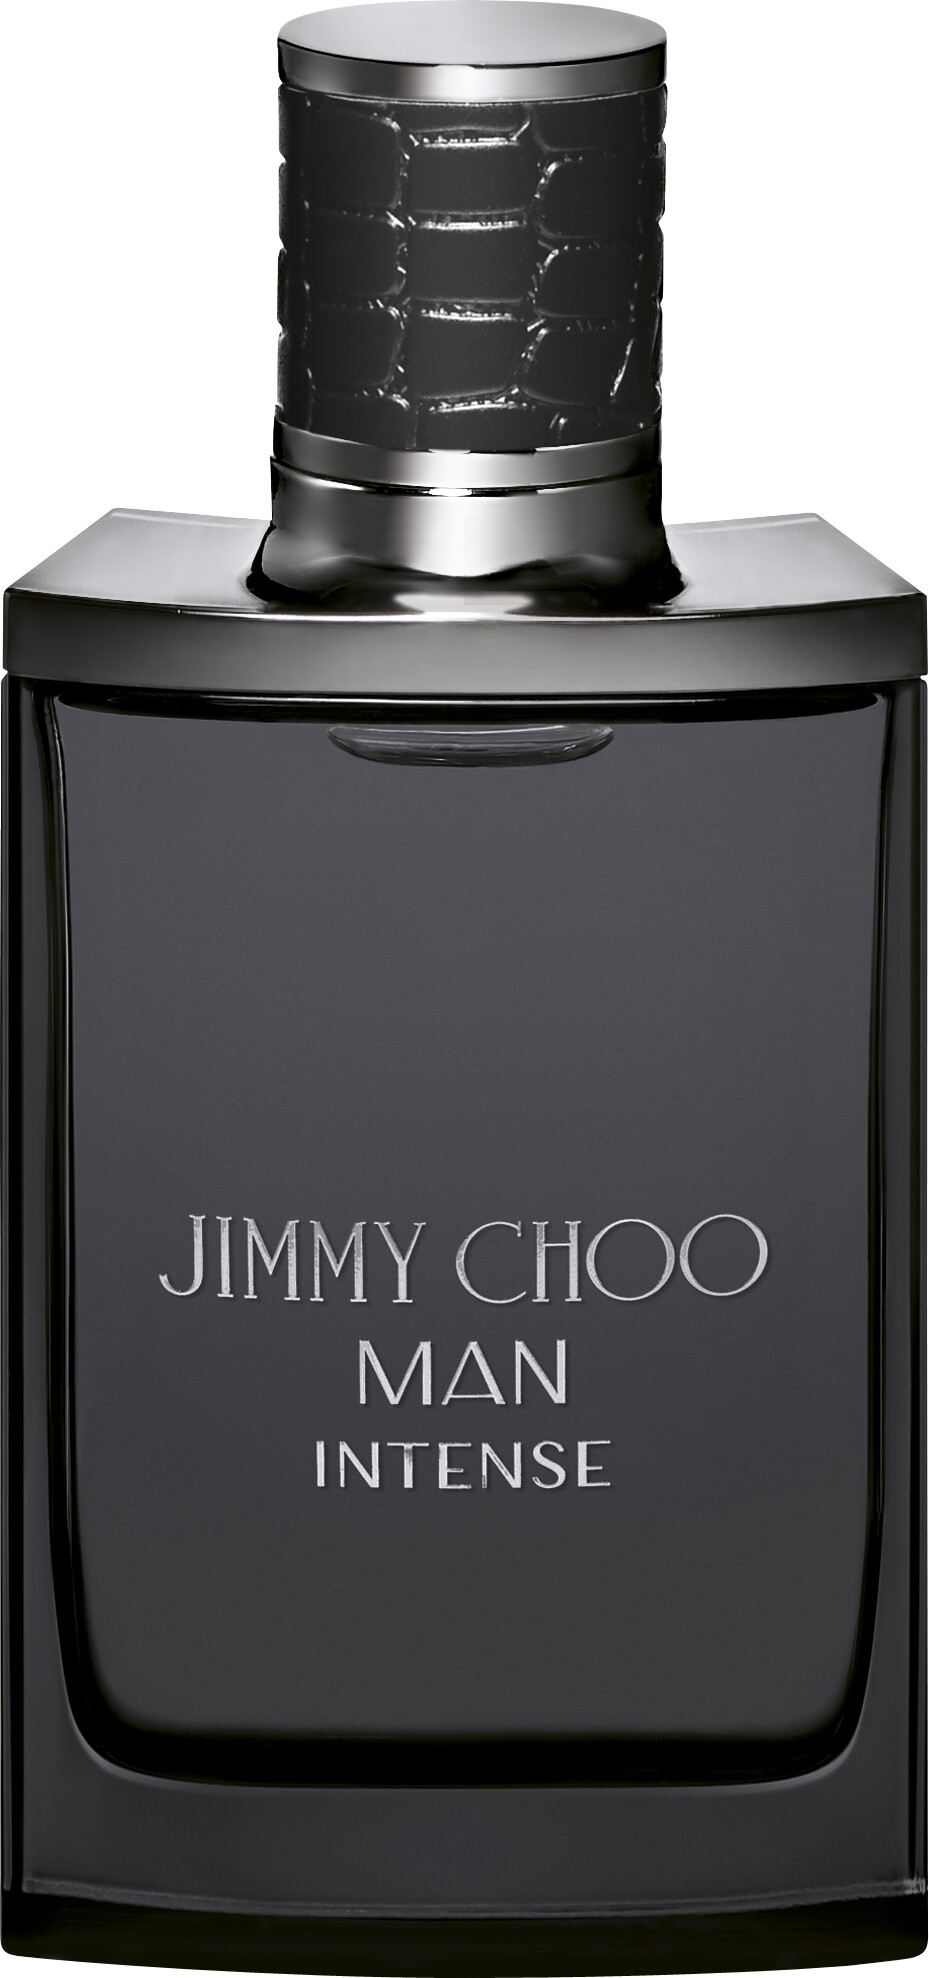 Jimmy Choo Man Intense Eau de Toilette Spray 50ml